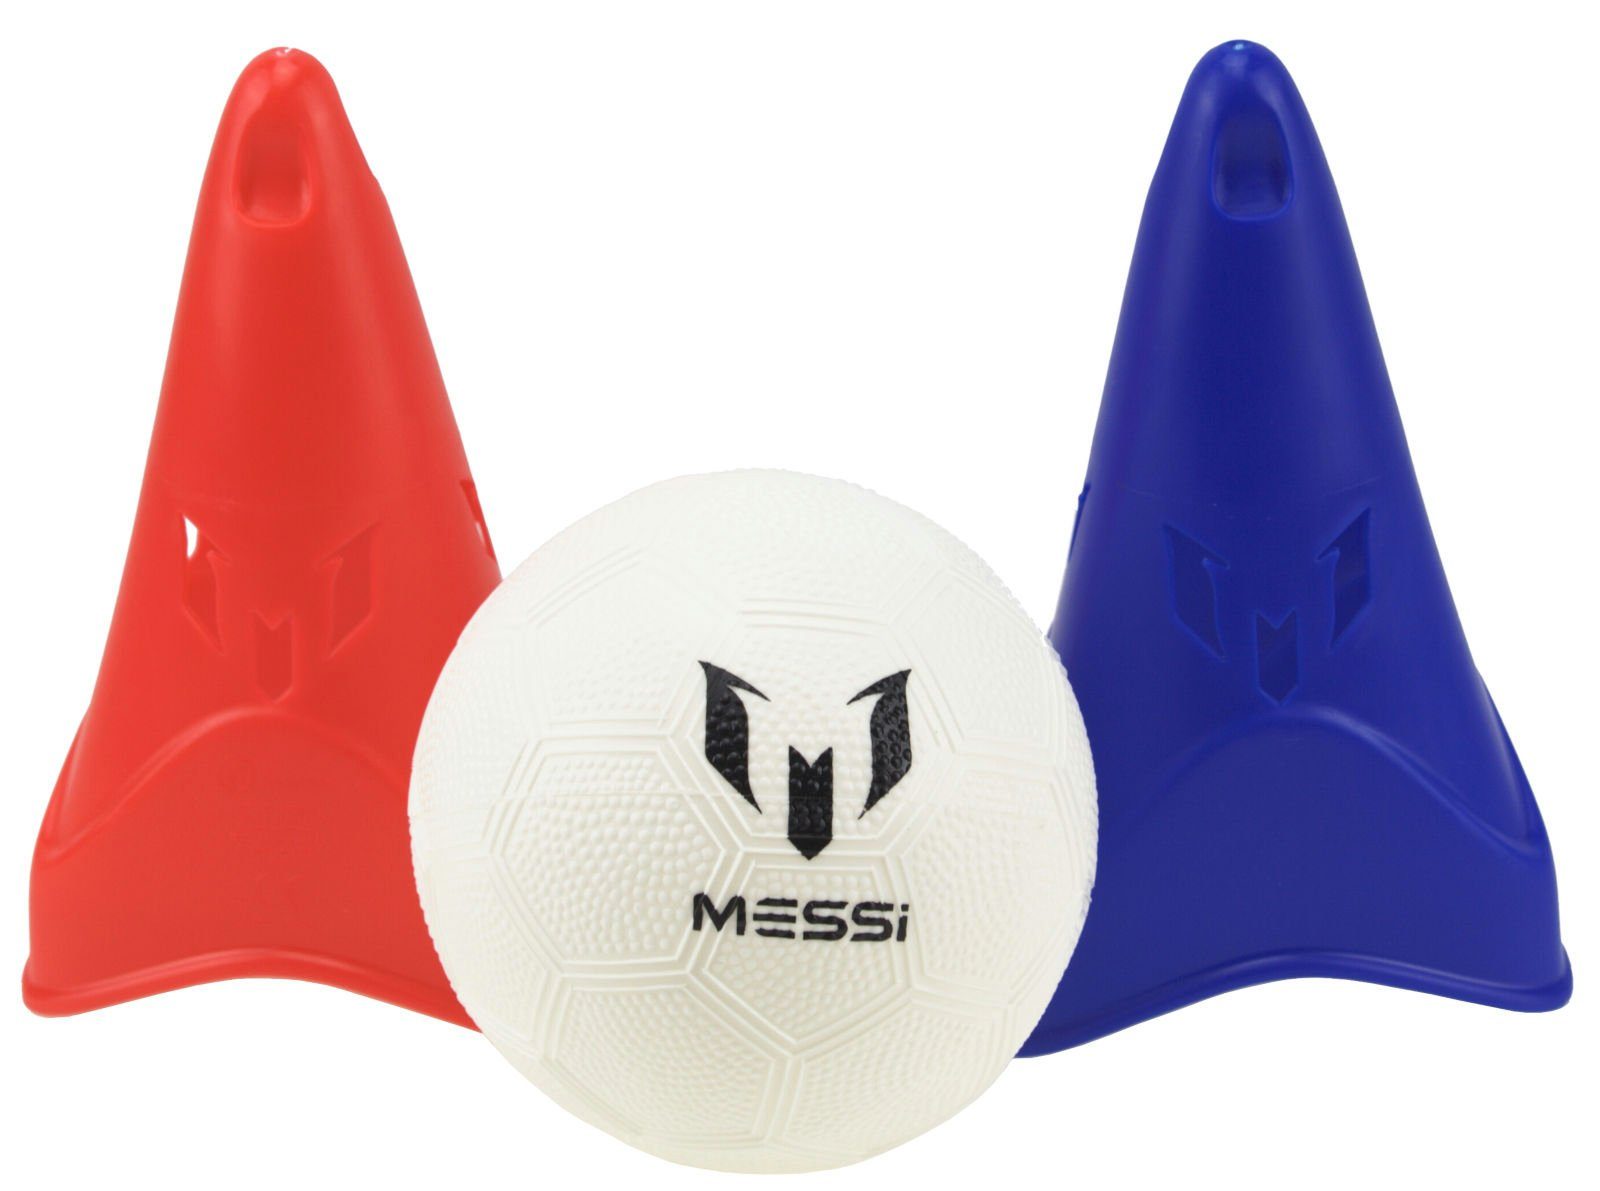 Speed System Ball Fußball Messi und mit Pylonen Fußballtor Training